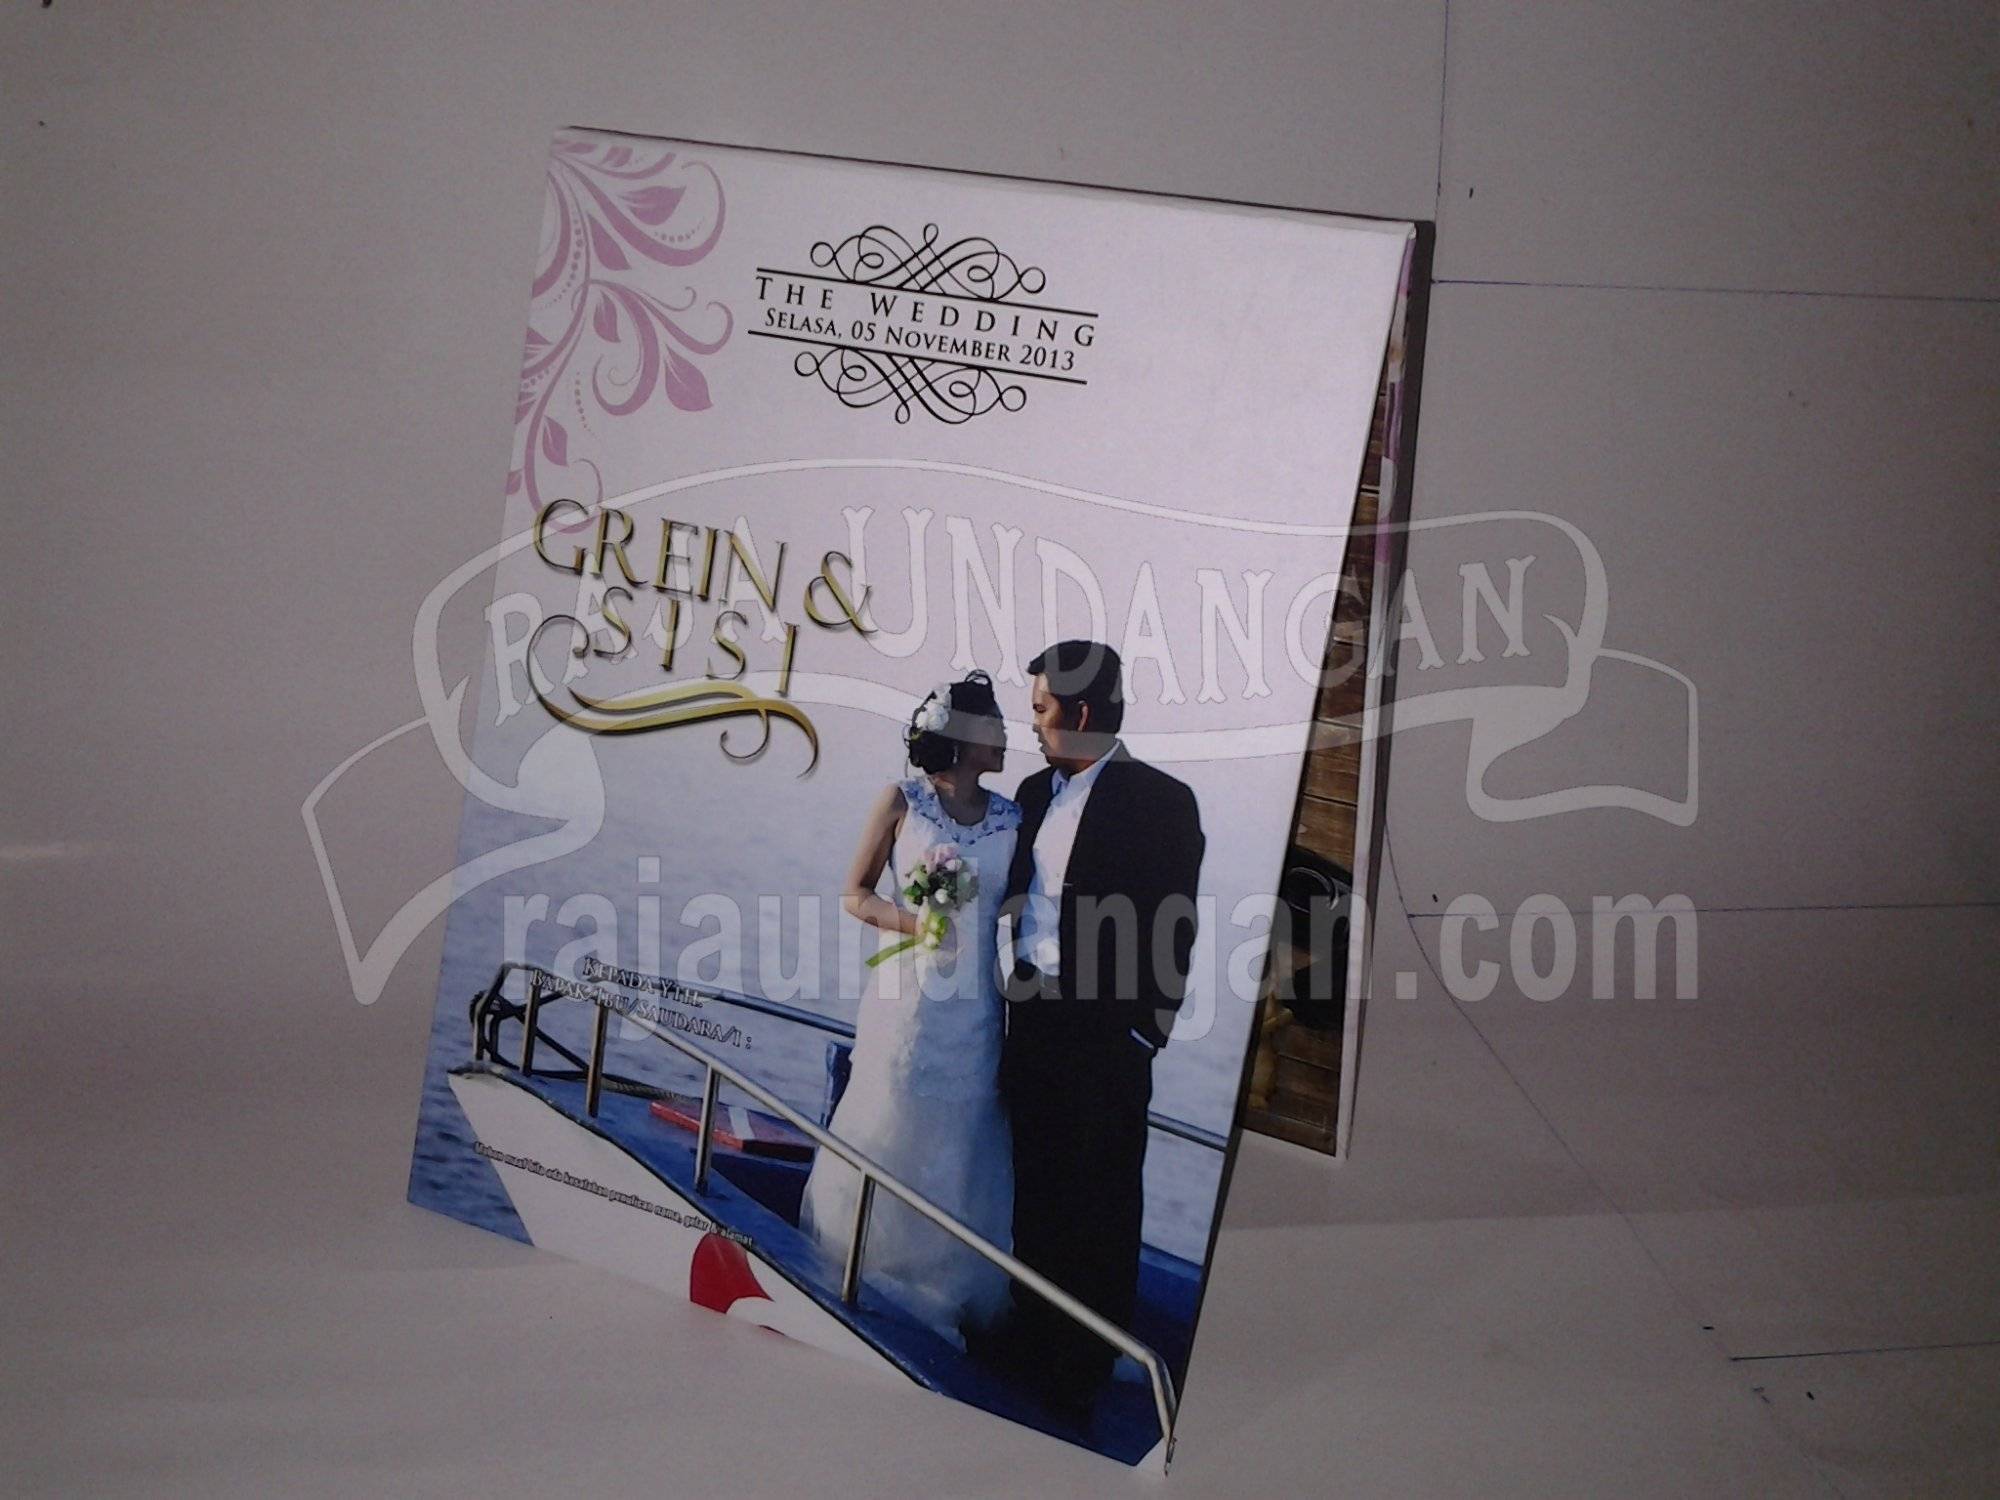 Undangan Pernikahan Hardcover Pop Up Grein dan Sisi - Pesan Wedding Invitations Simple dan Elegan di Kedungcowek